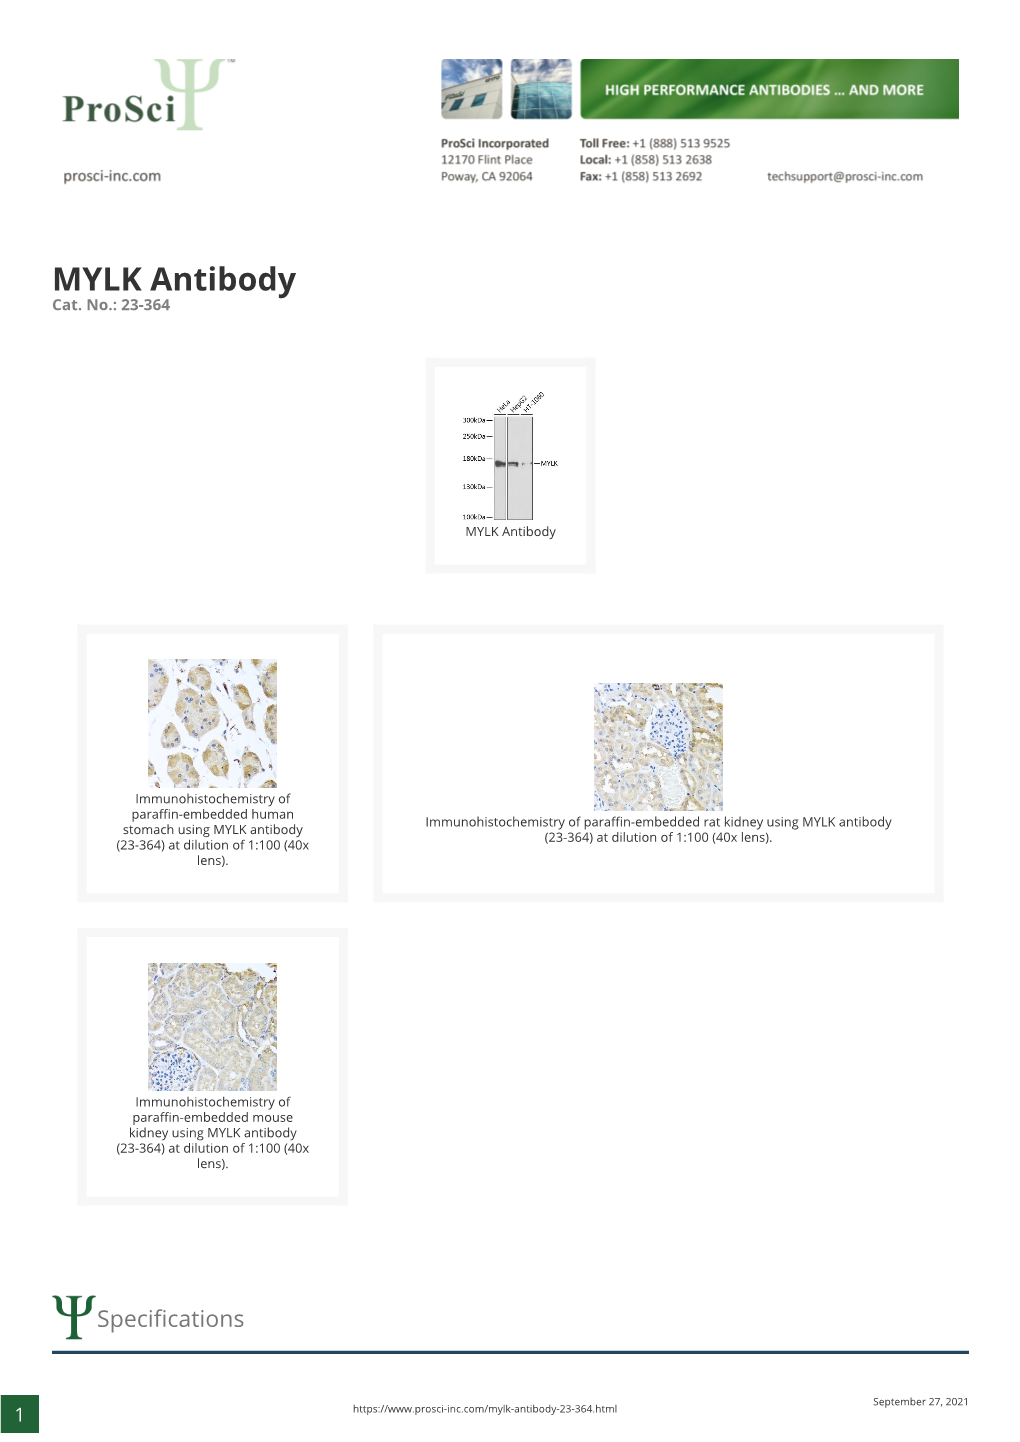 MYLK Antibody Cat